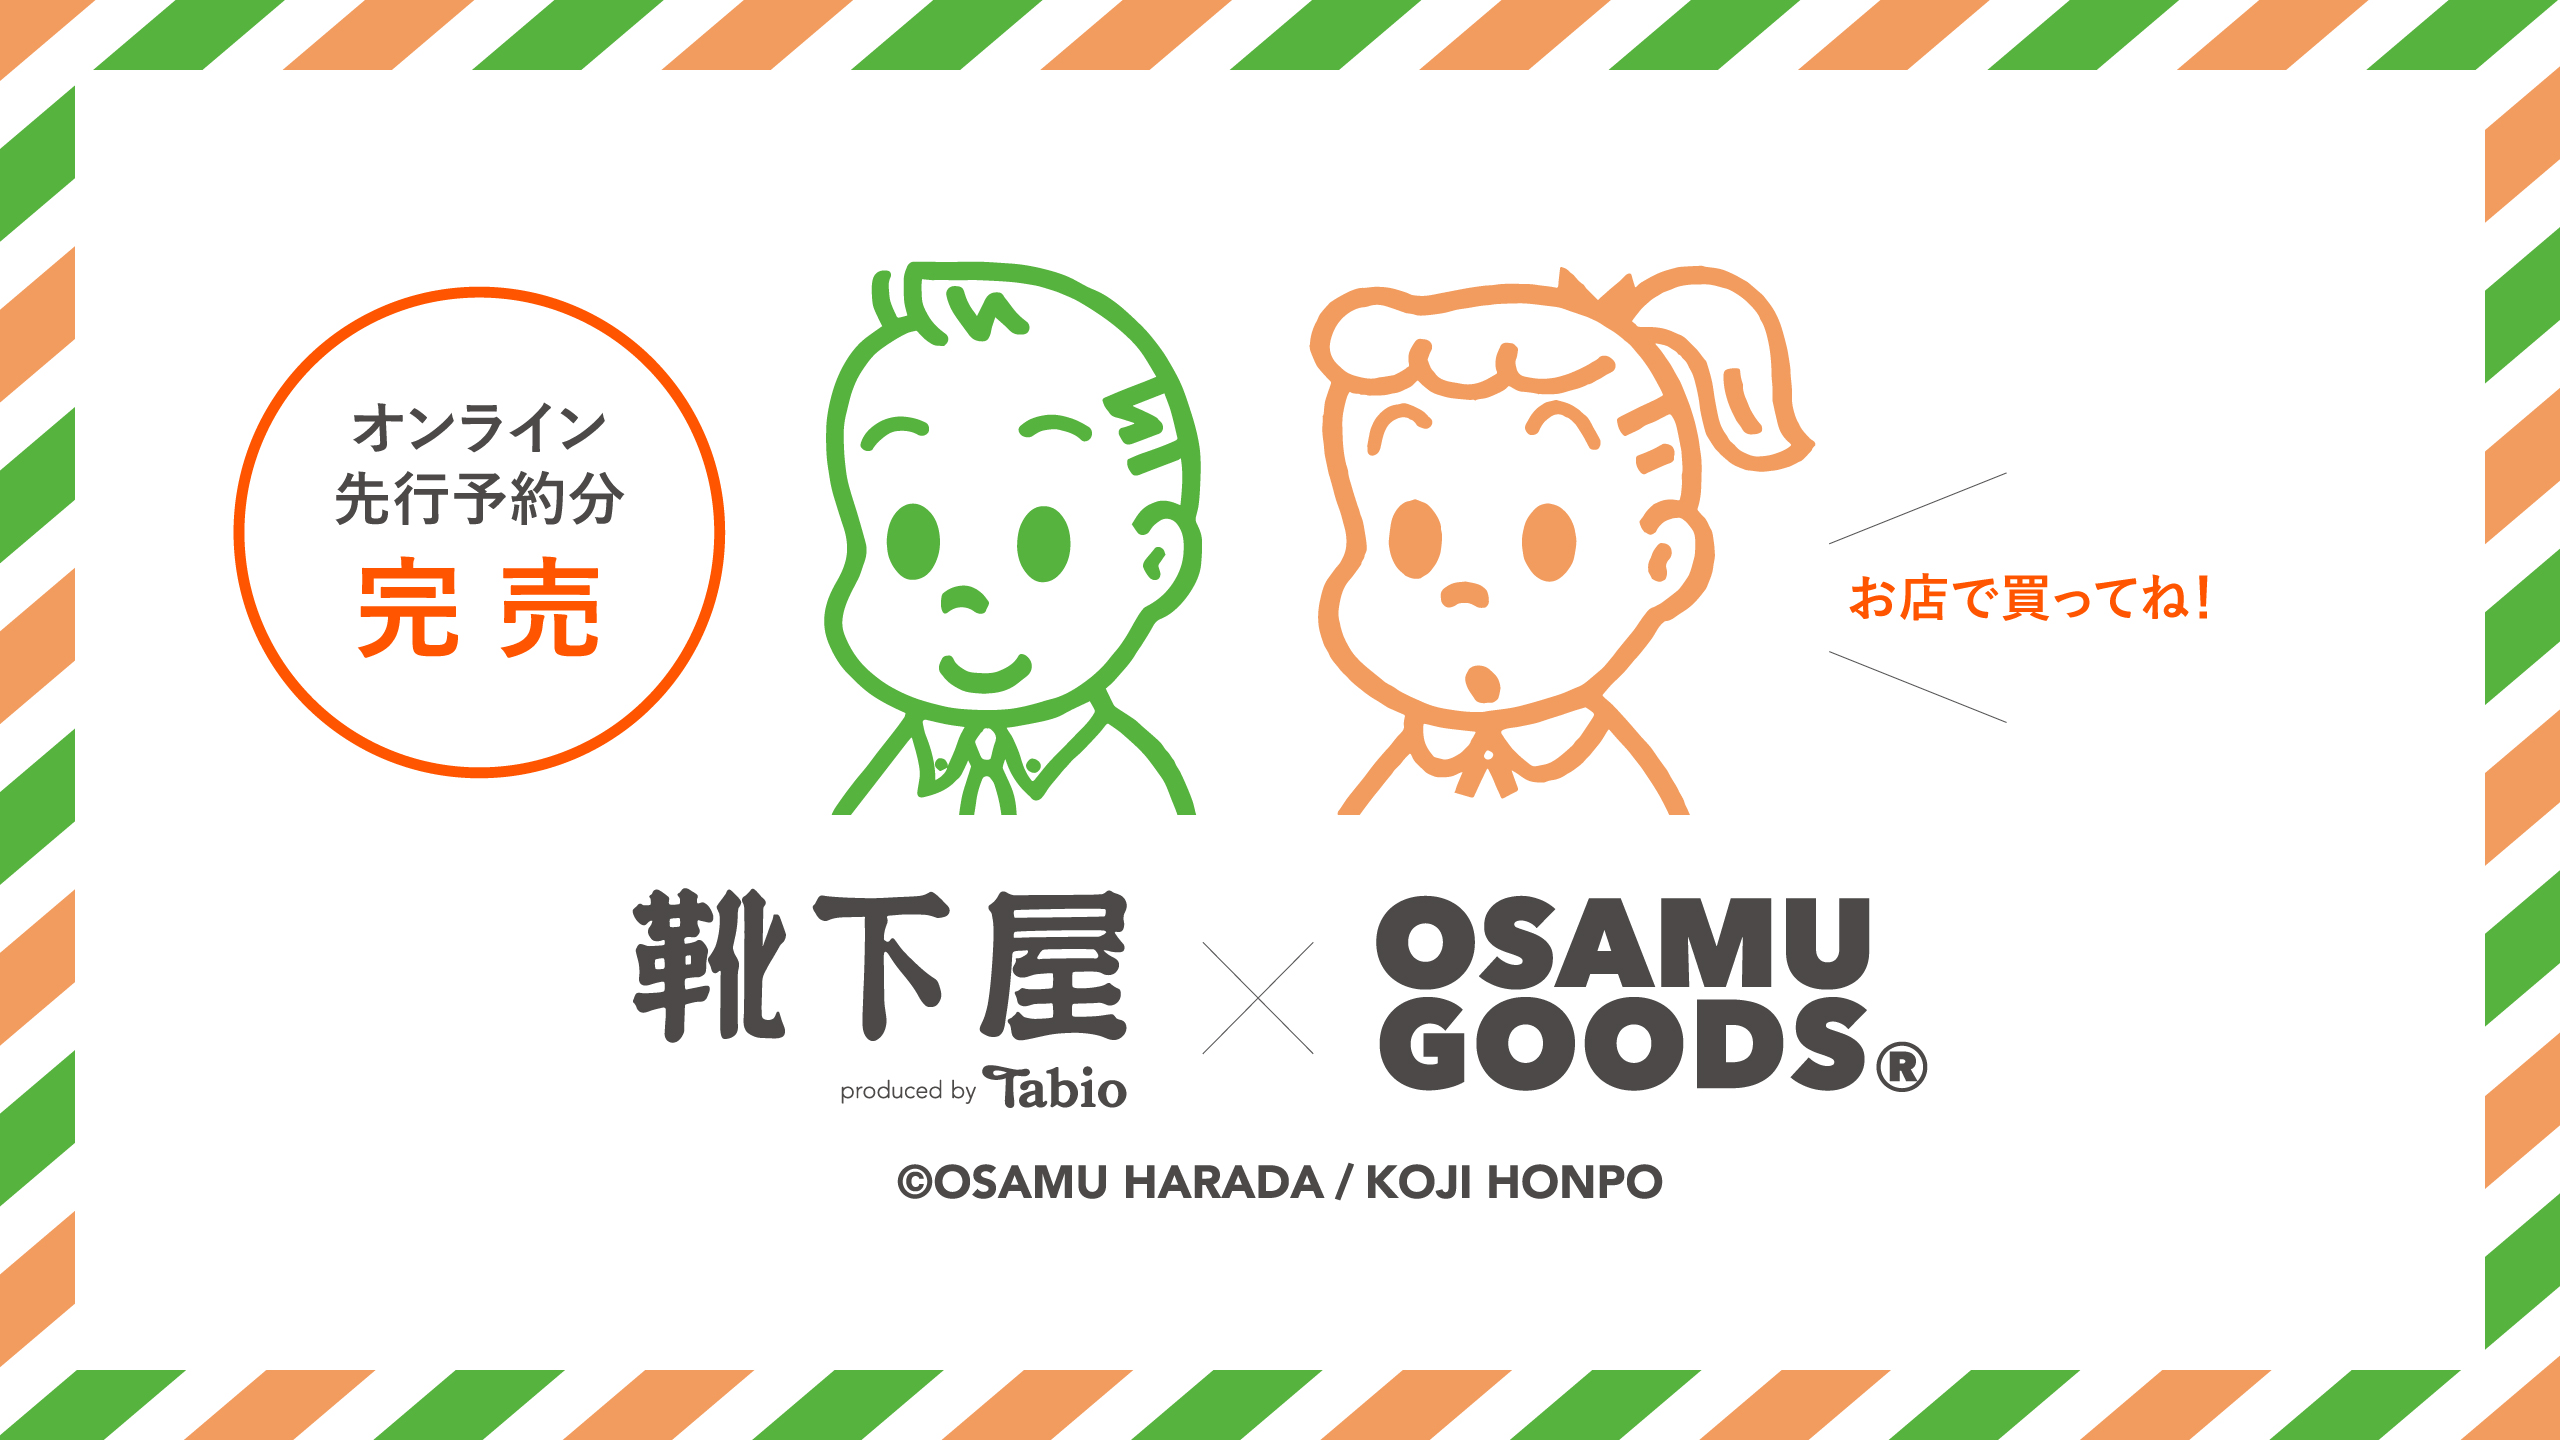 靴下屋 × OSAMU GOODS | 靴下屋公式通販 Tabio オンラインストア